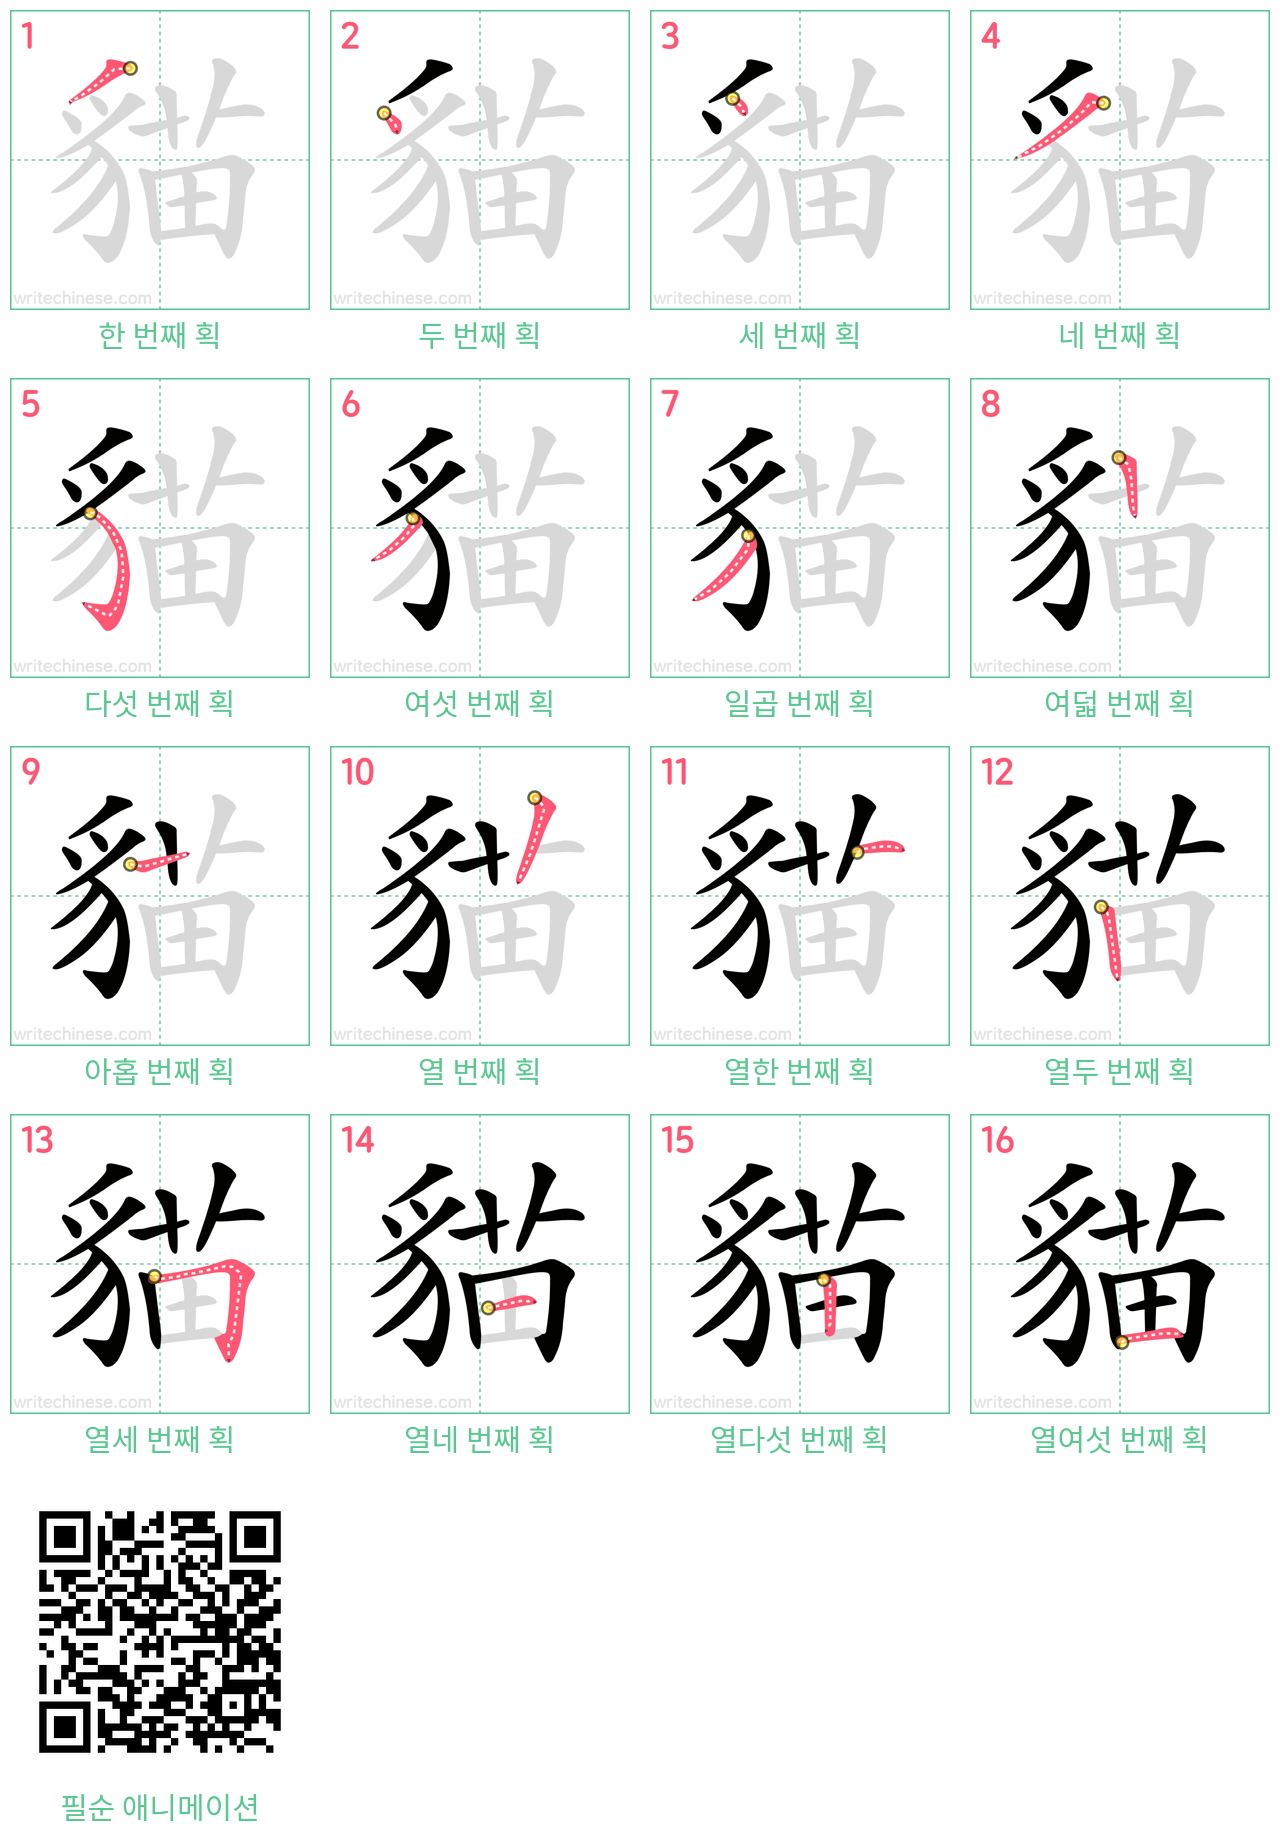 貓 step-by-step stroke order diagrams